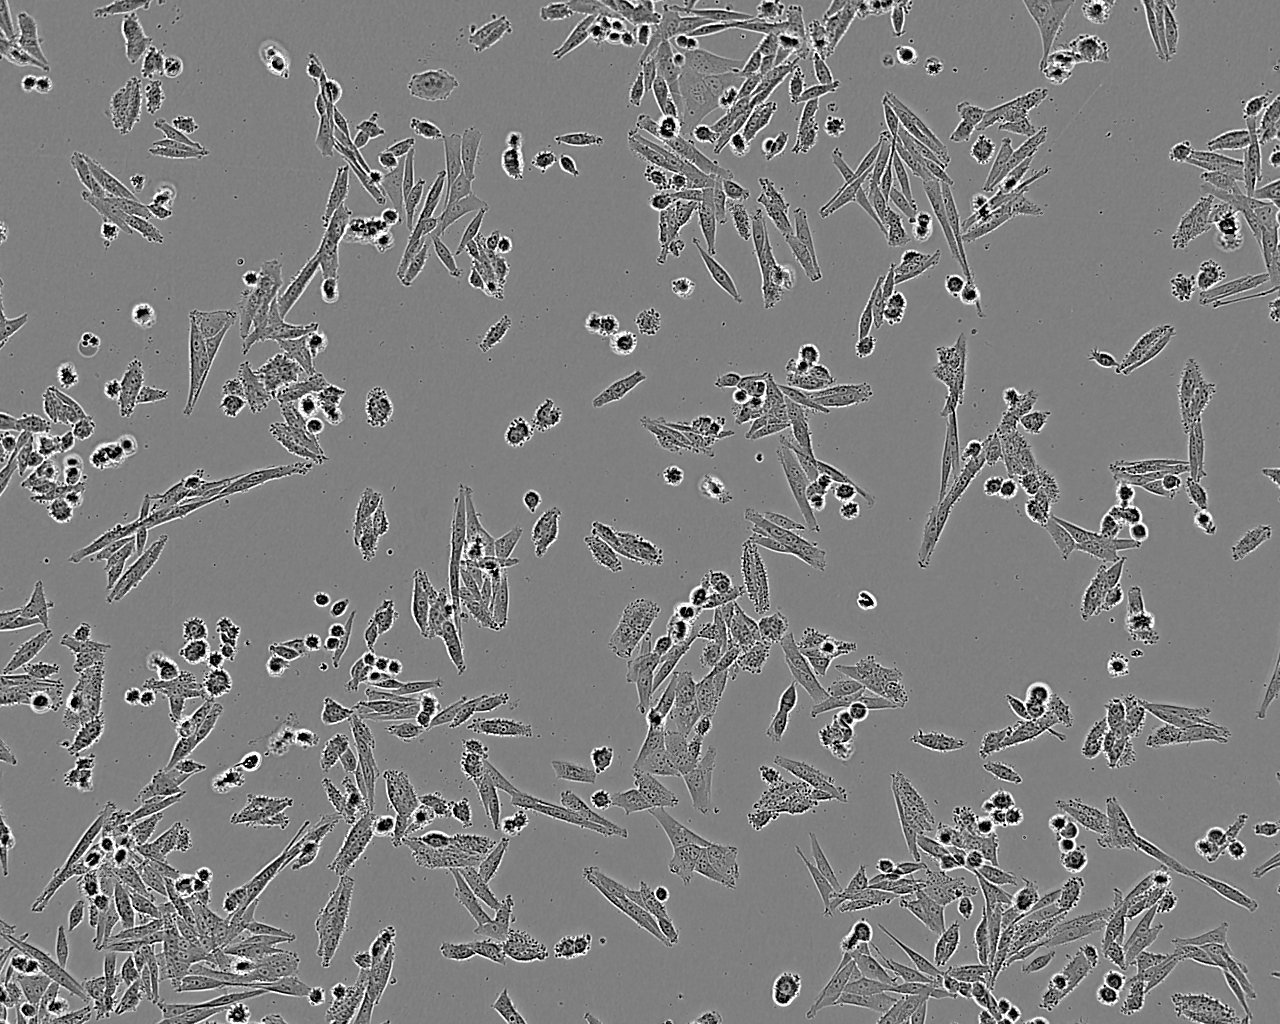 Neuro-2a epithelioid cells小鼠脑神经瘤细胞系,Neuro-2a epithelioid cells